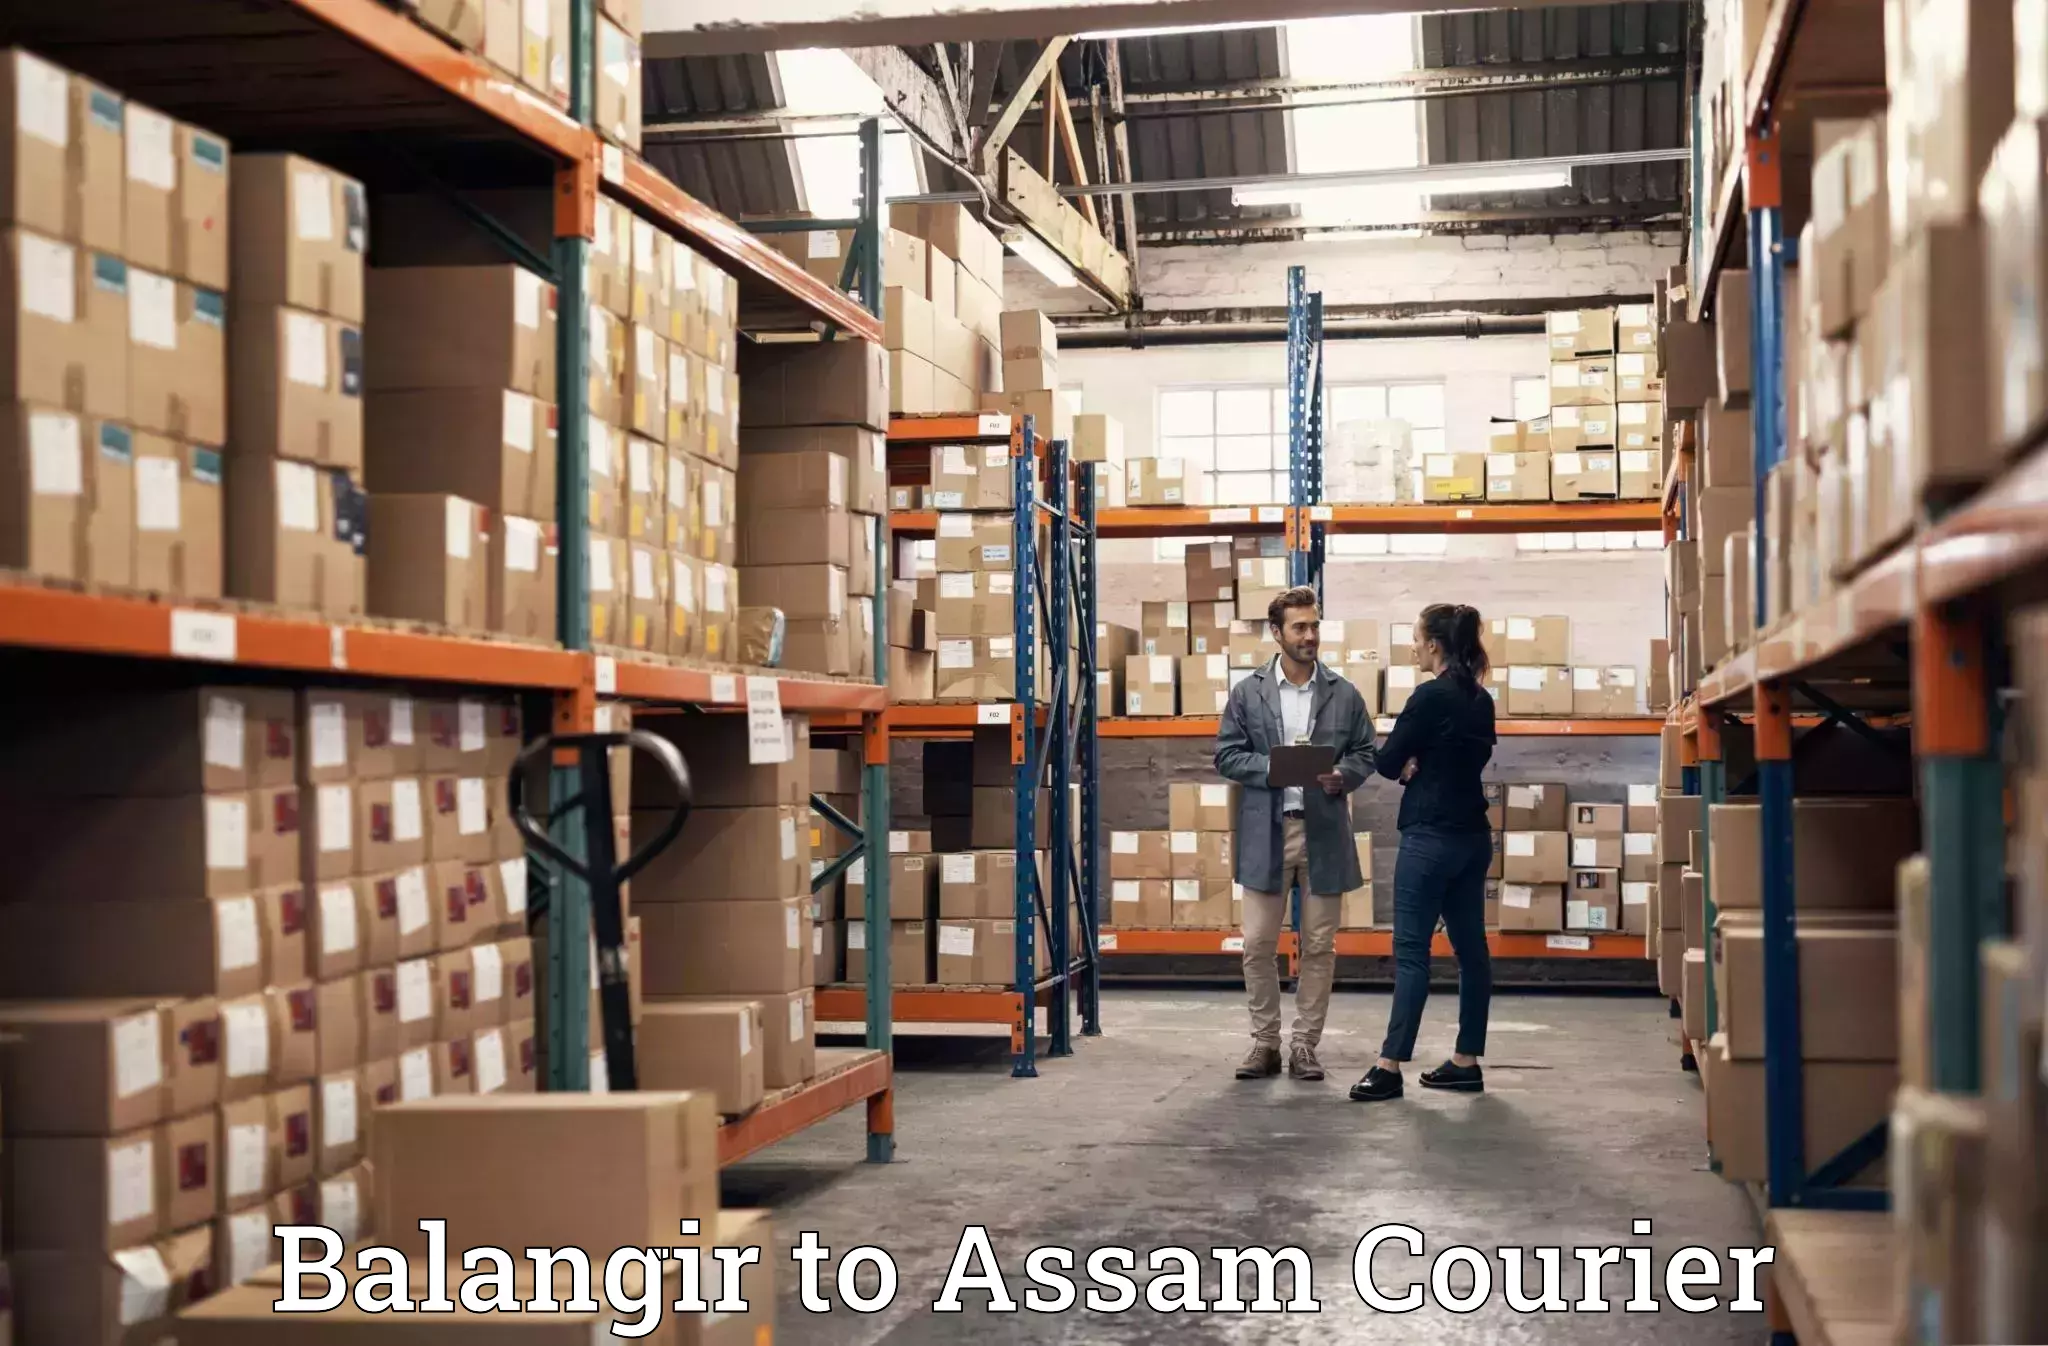 Furniture transport company Balangir to Kampur